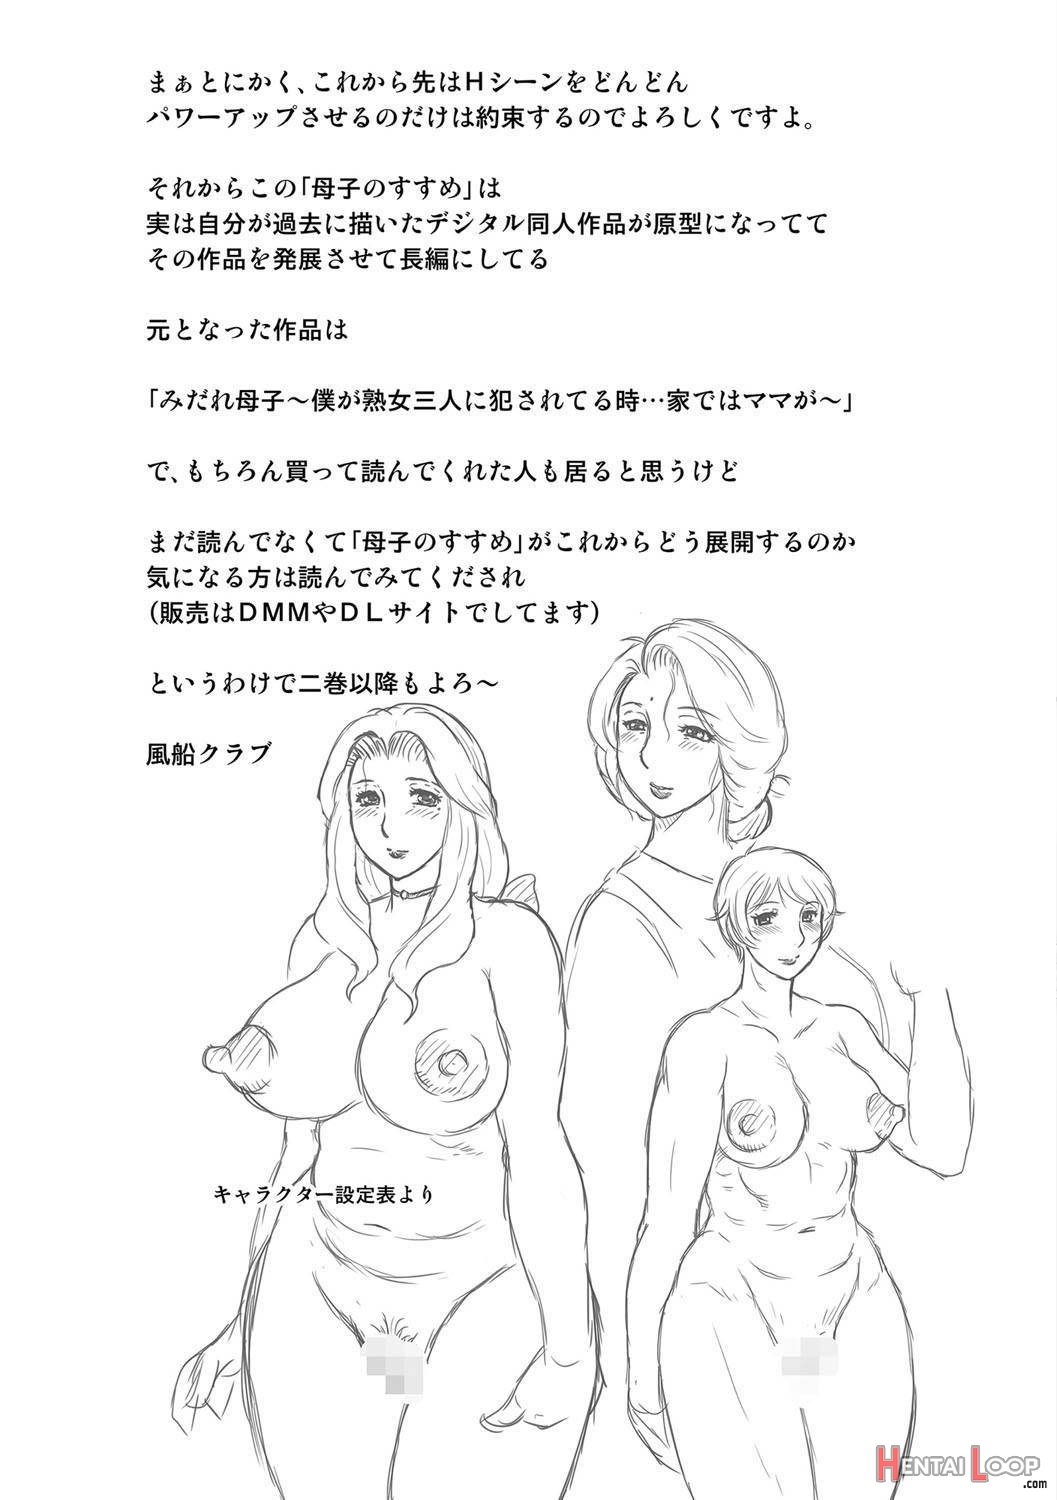 Boshi no Susume page 180